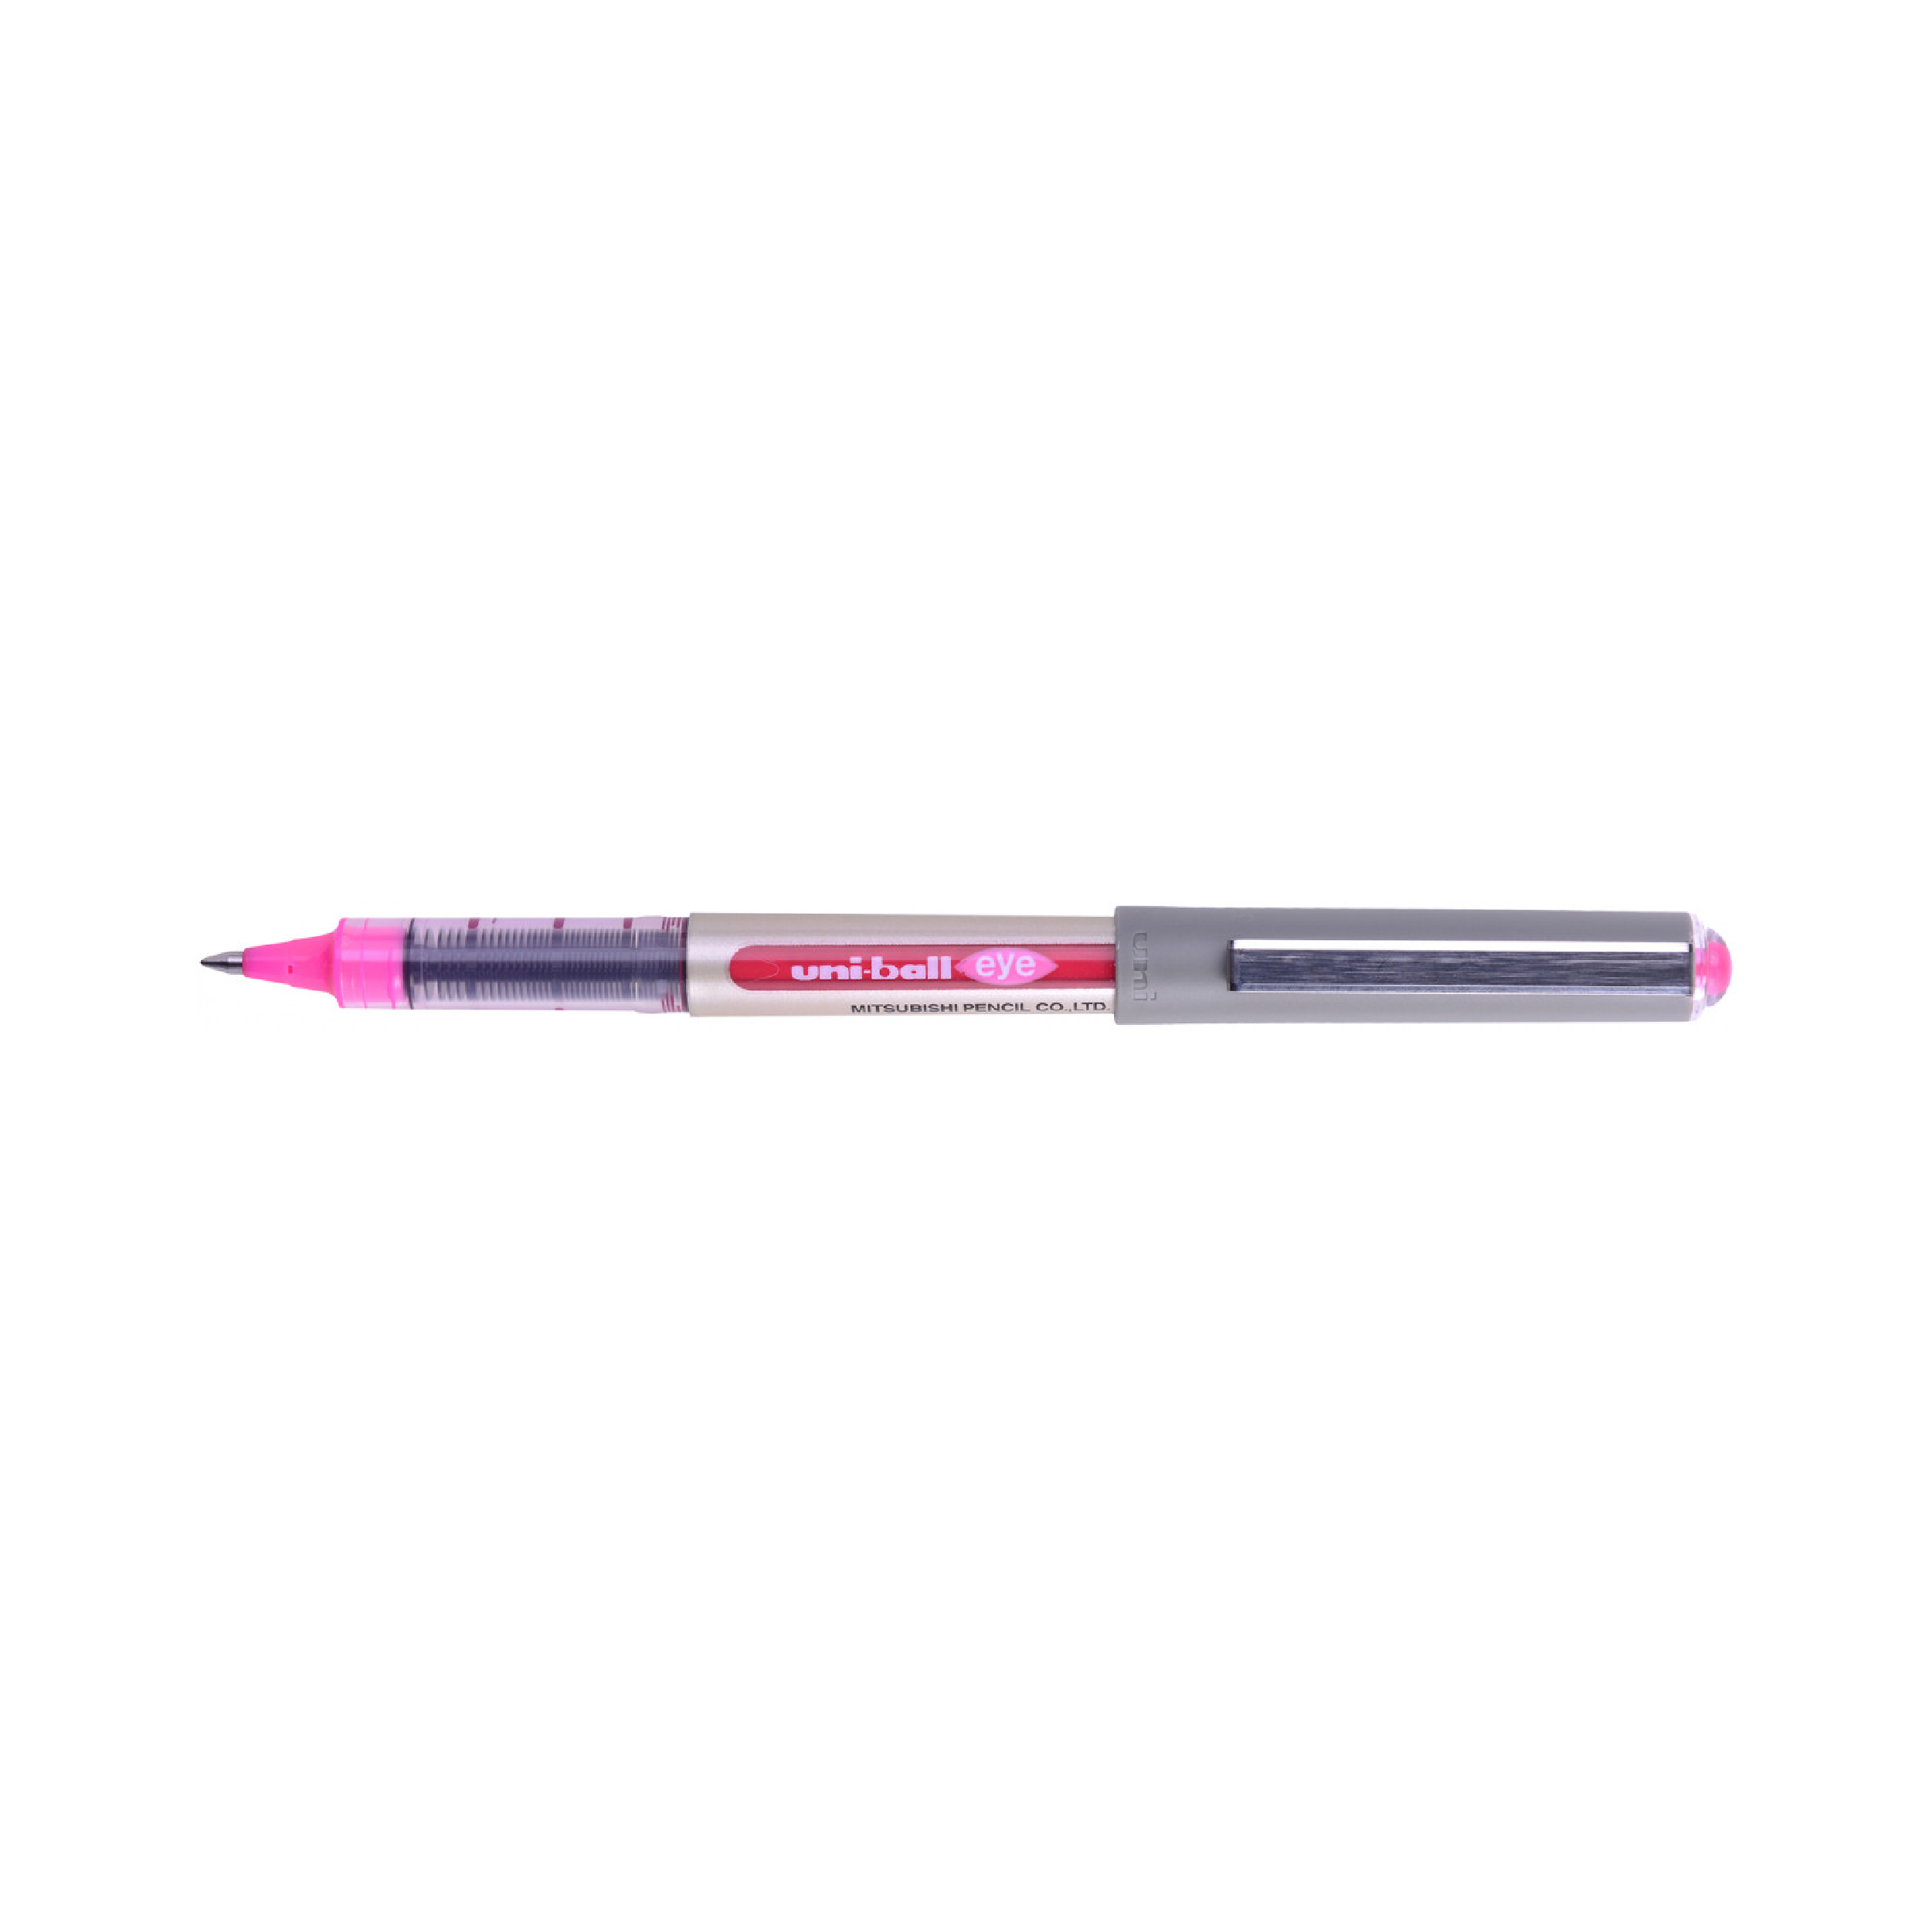 uni-ball Eye Fine Rollerball Pen, Medium Point (UB-157)